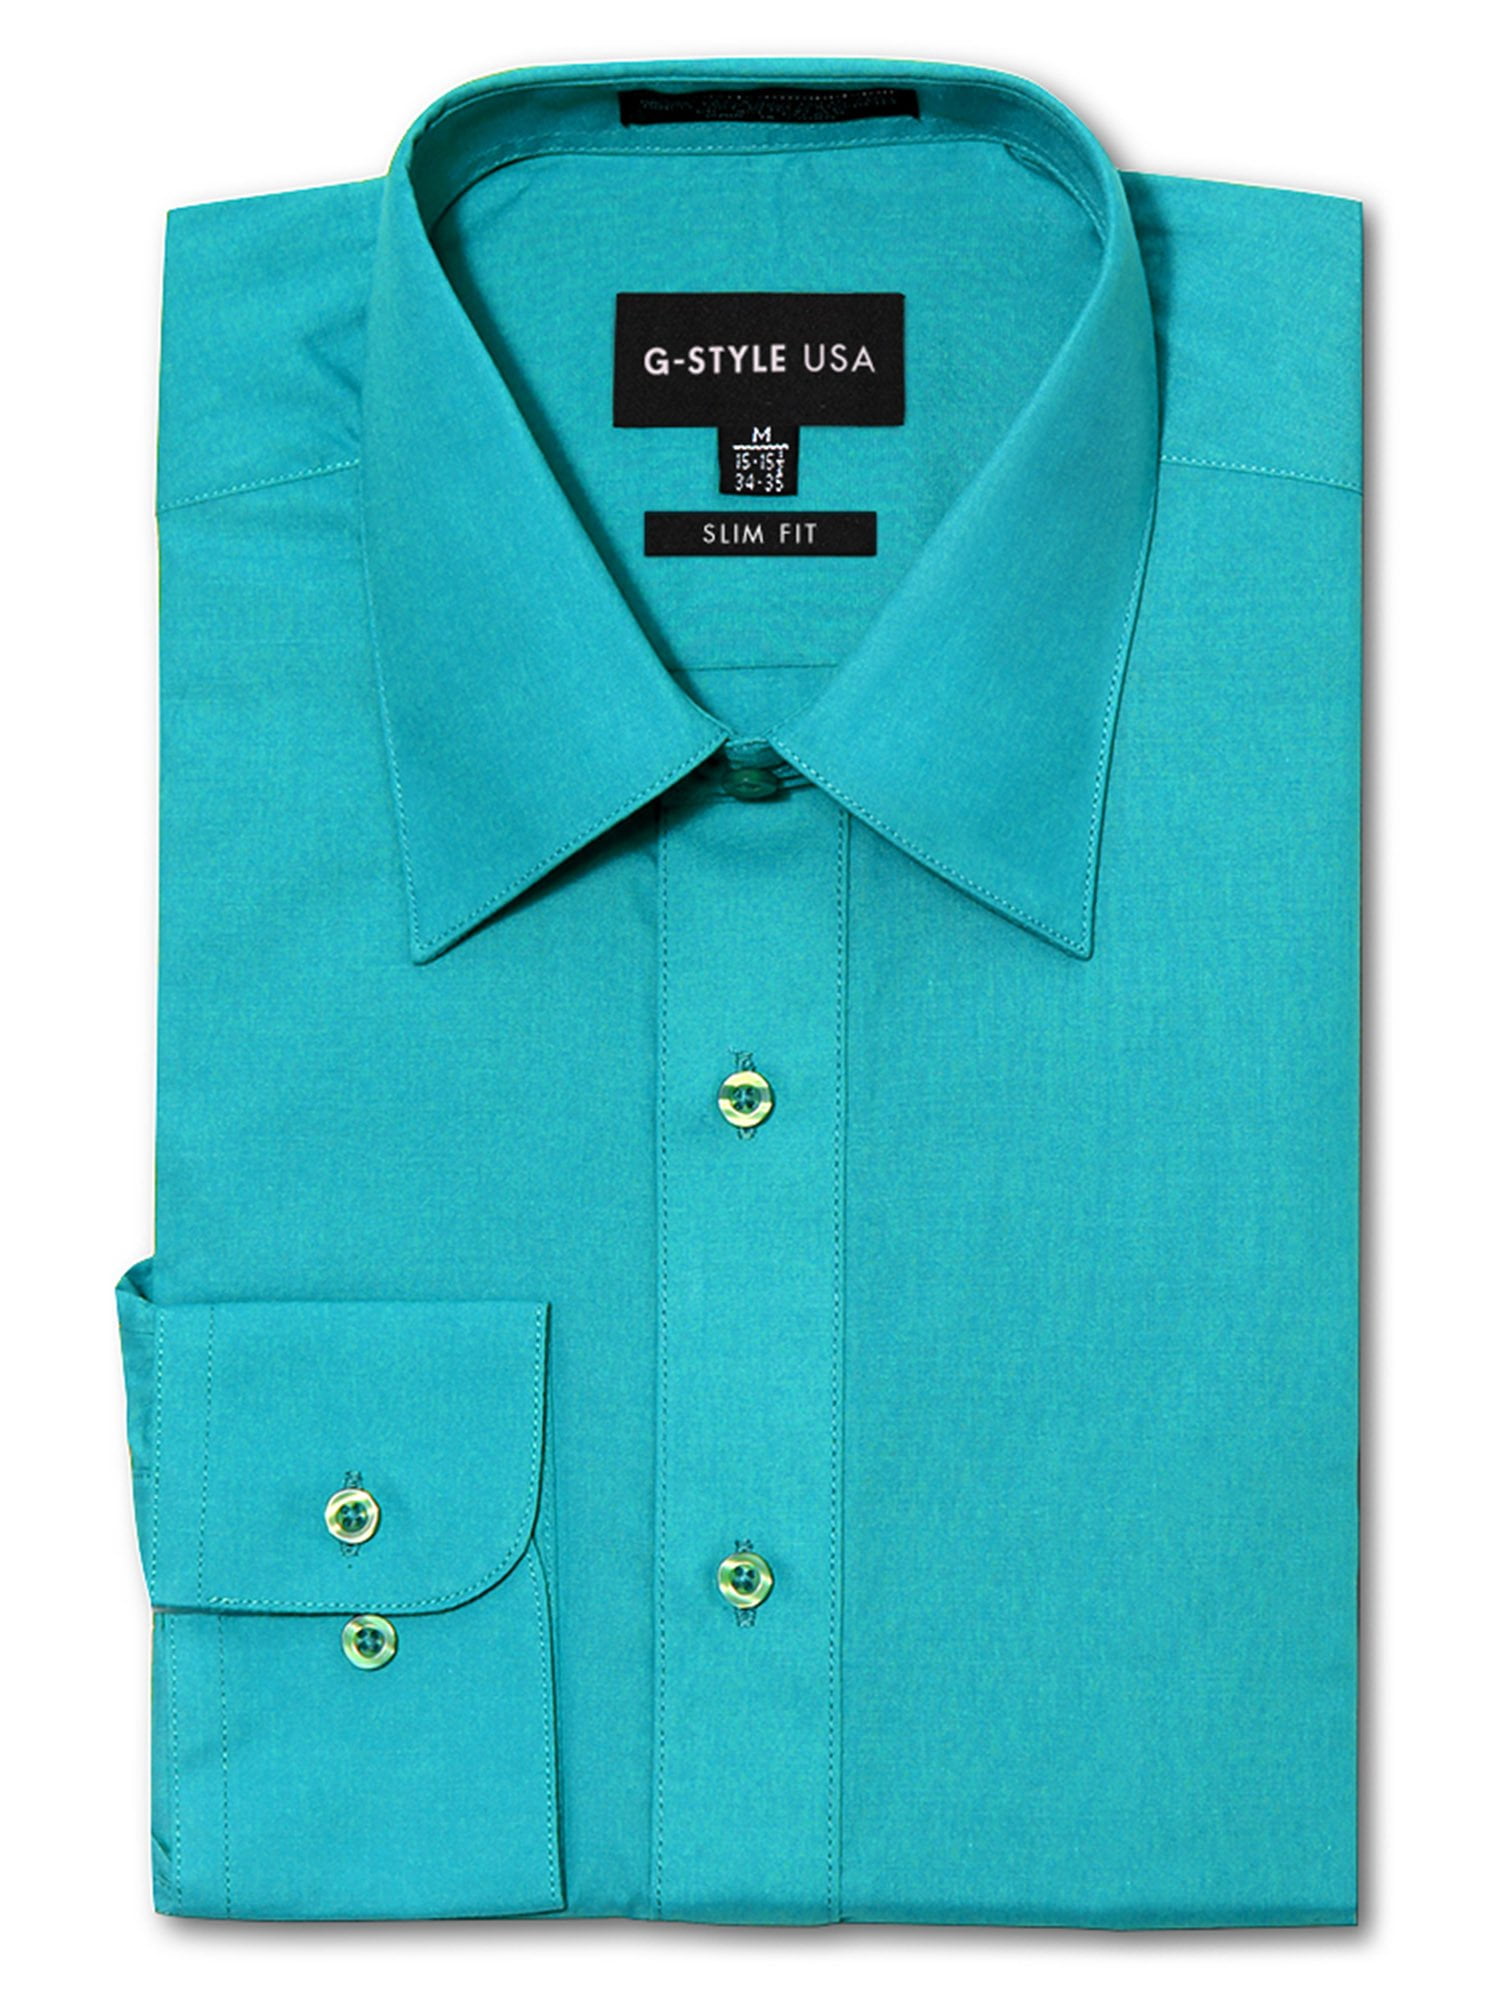 Green Colour Full Sleeves Linen Cotton Plain Shirt For Men, 52% OFF